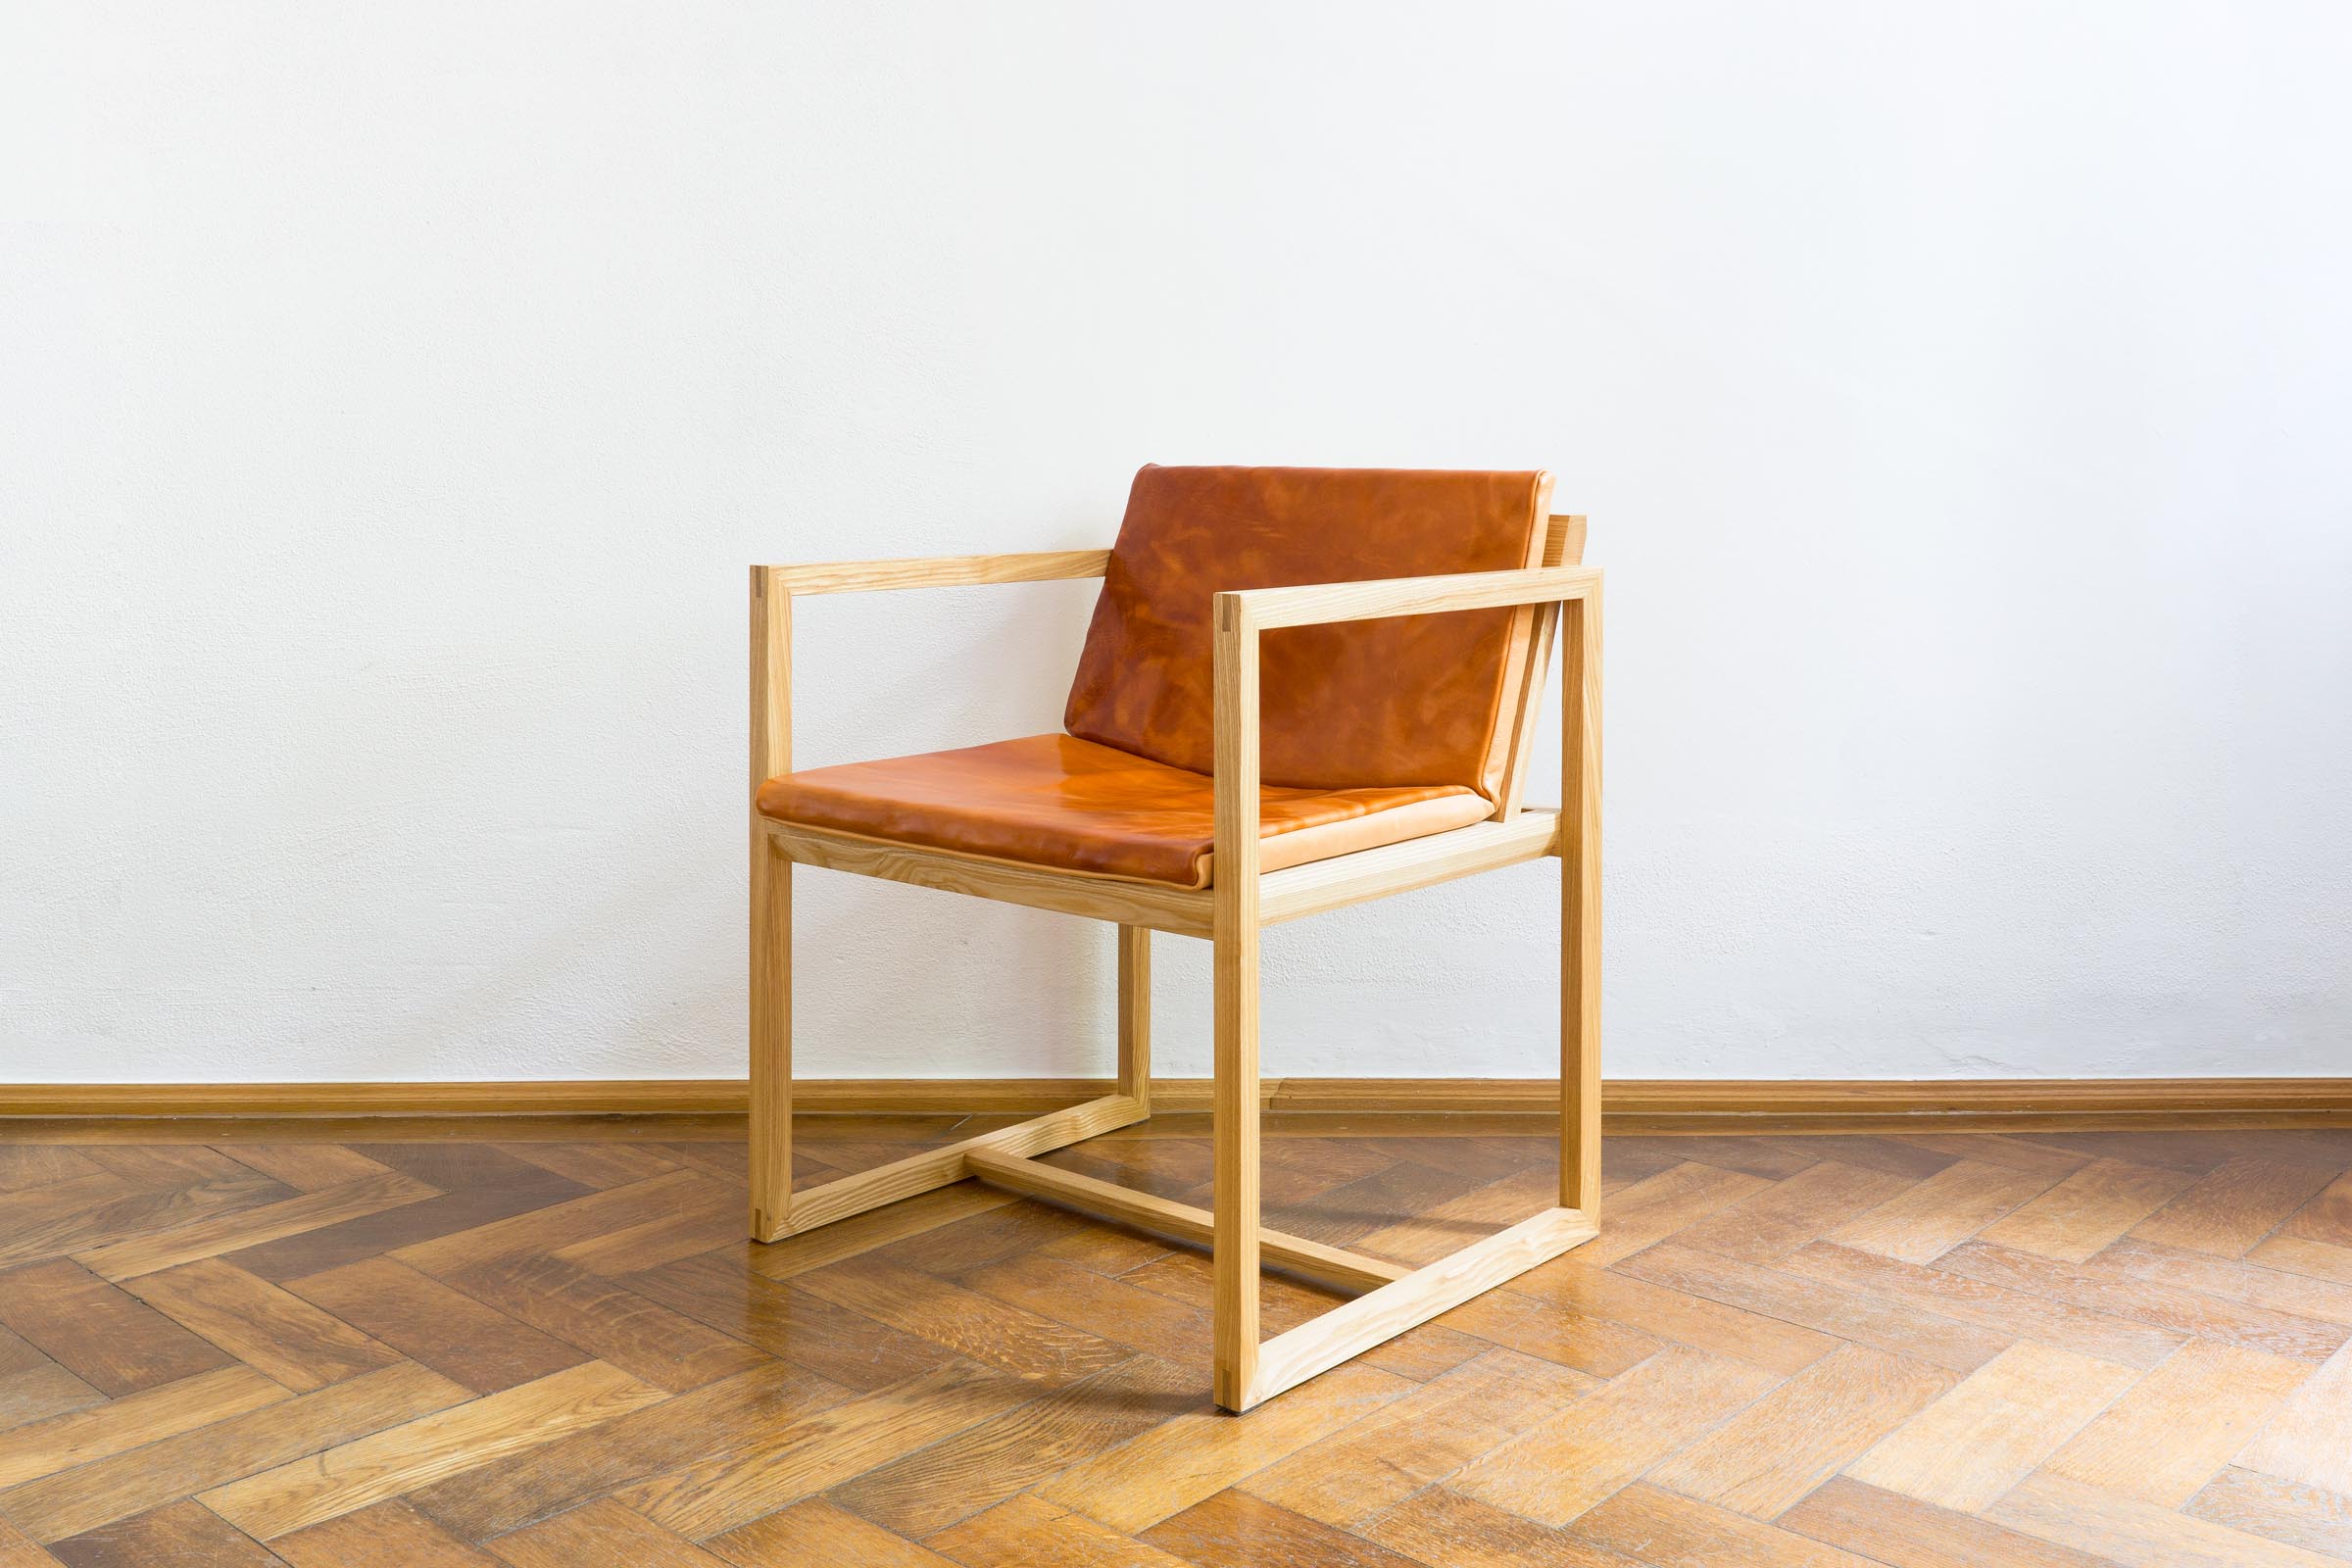 Stuhl mit Lederauflage aus Massivholz Esche handgefertigt als Einzelmöbelstück von The Trees of Life in Perg in Oberösterreich